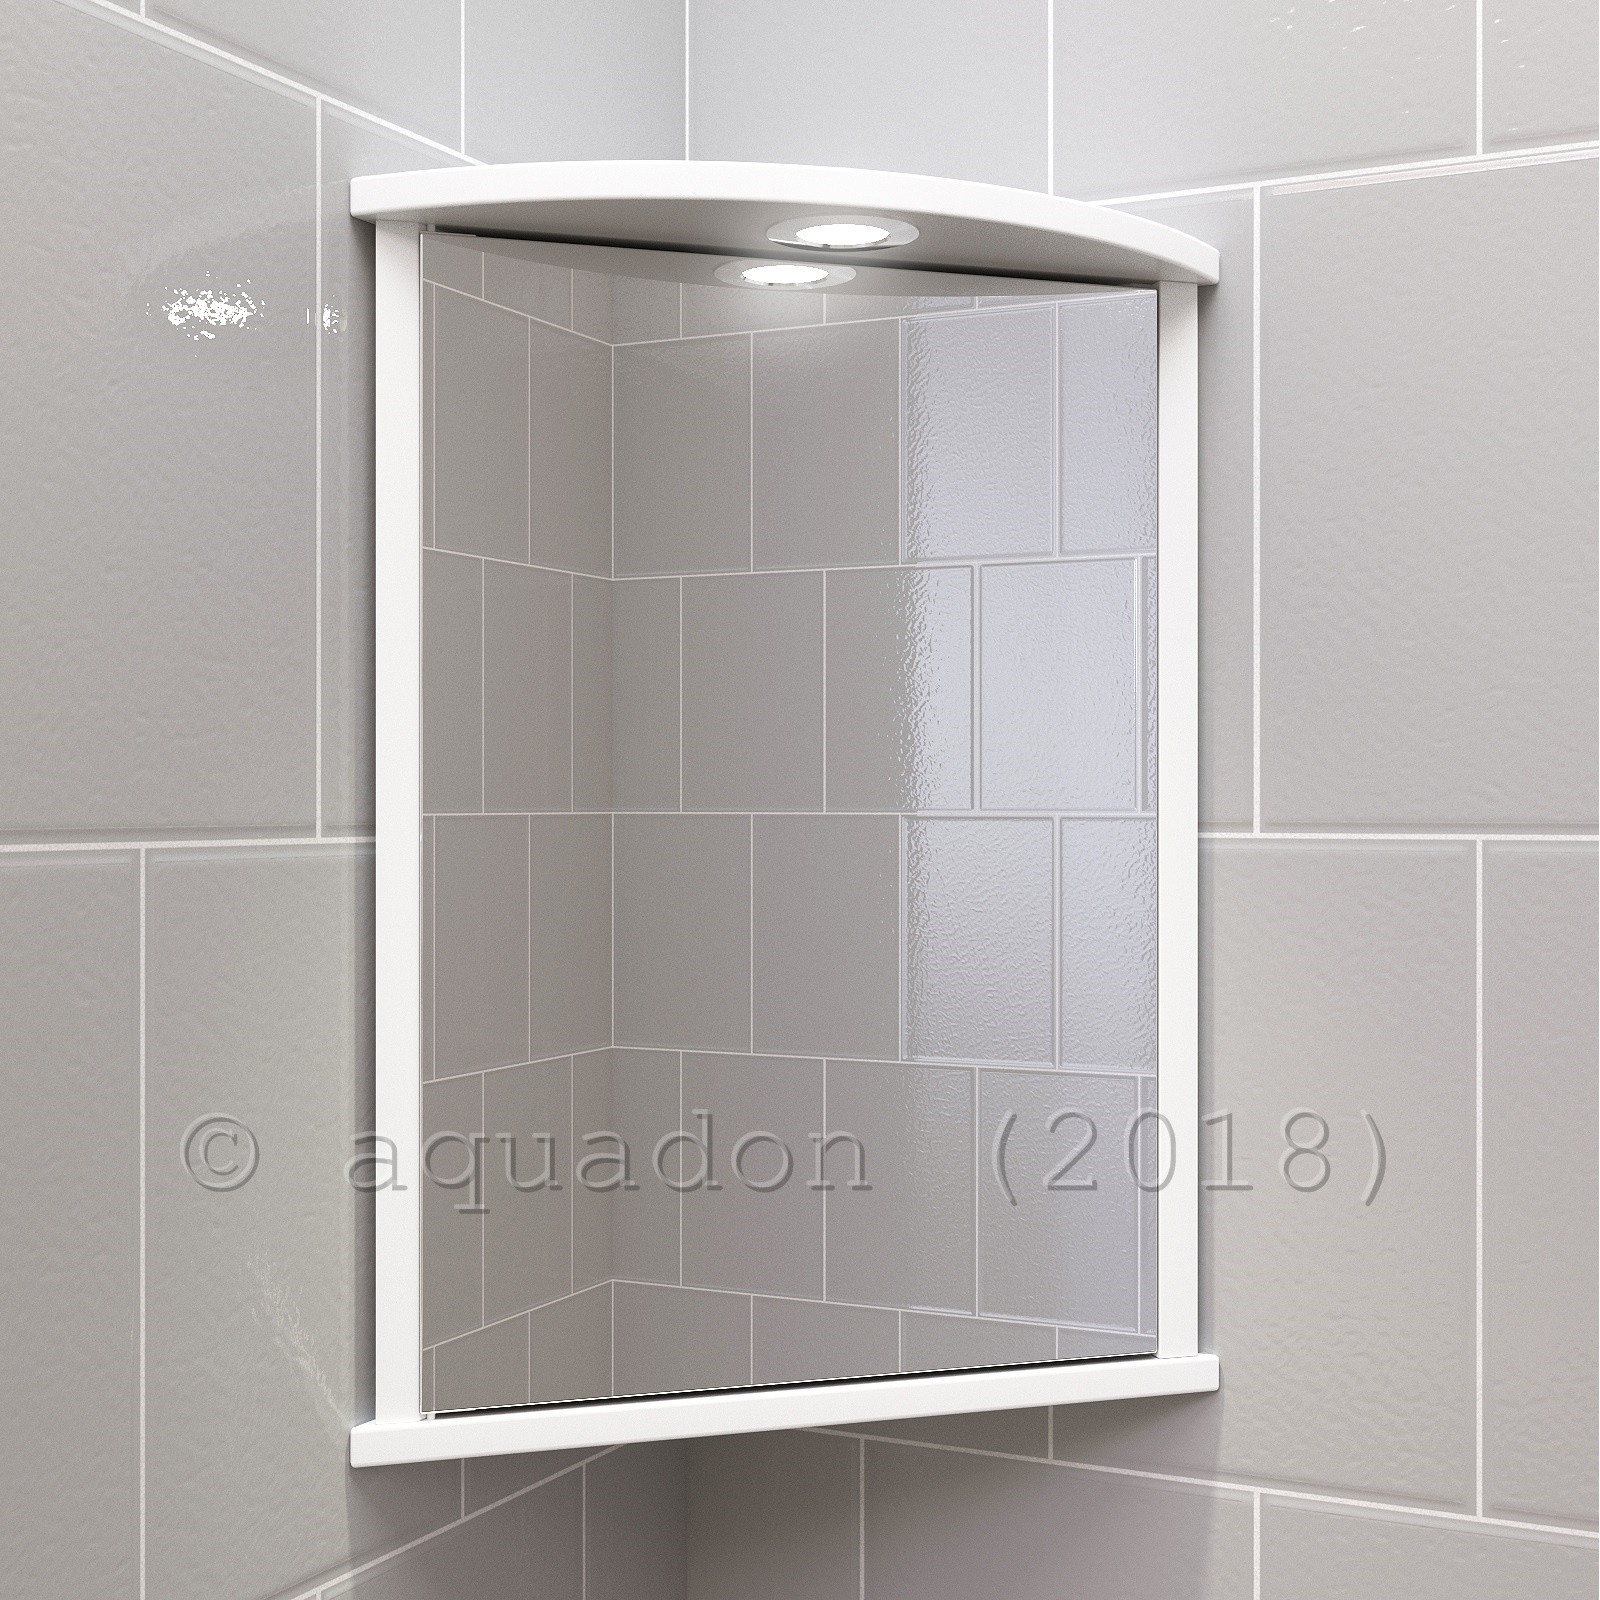 Corner Bathroom Mirror
 Bathroom Wall Corner Mirror Cabinet White Single Door